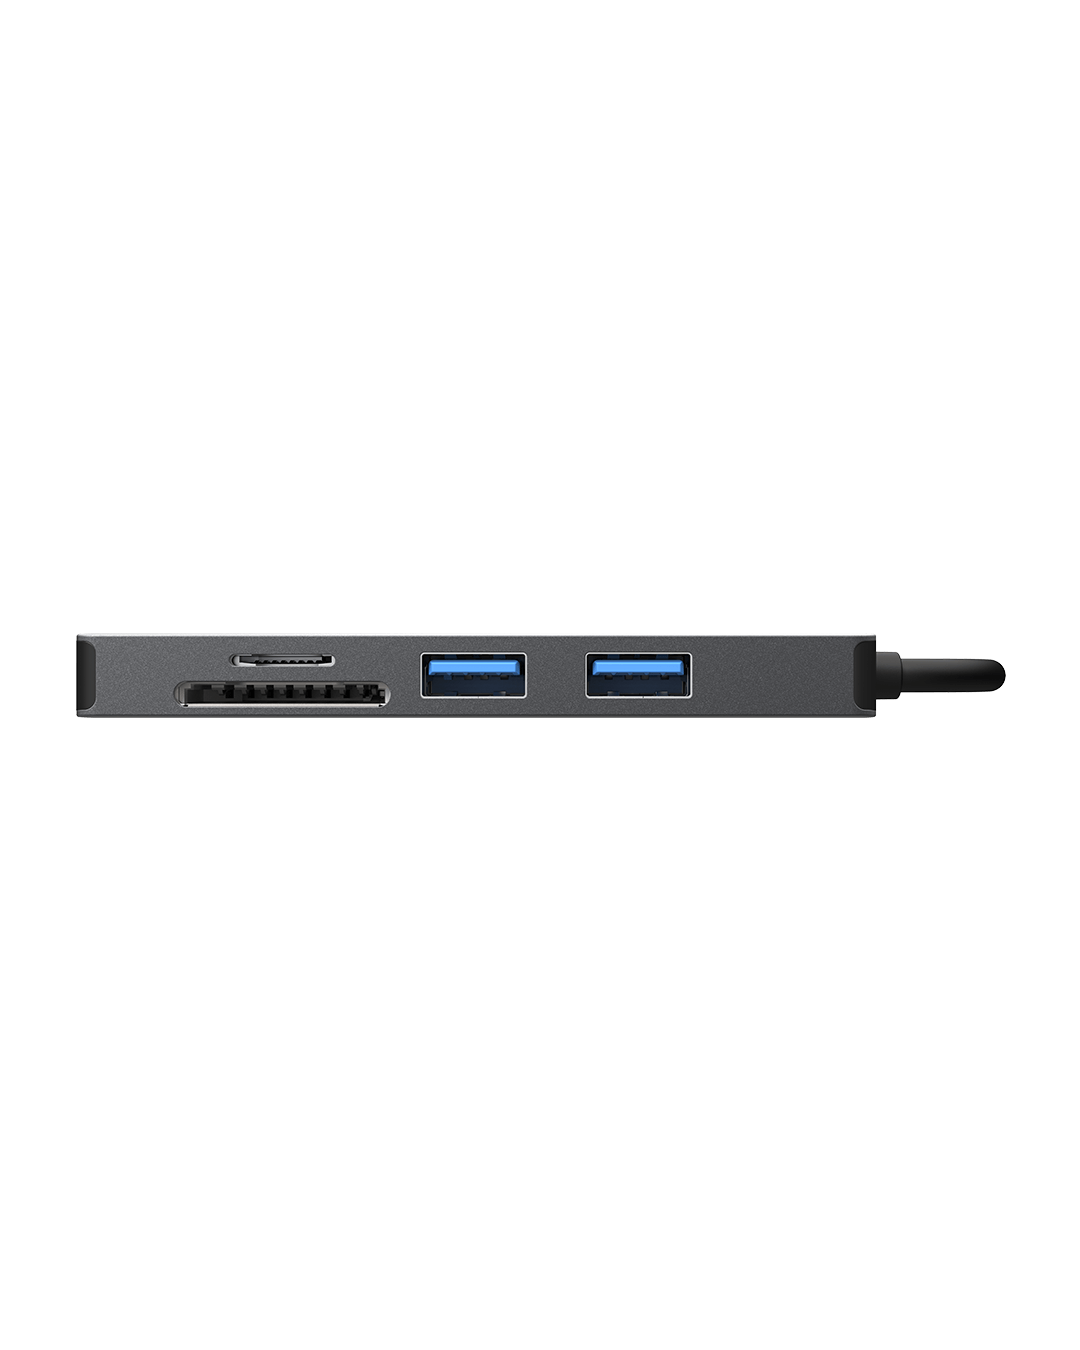 Sitecom 5 in 1 USB-C Multiport Adapter - CN-5501